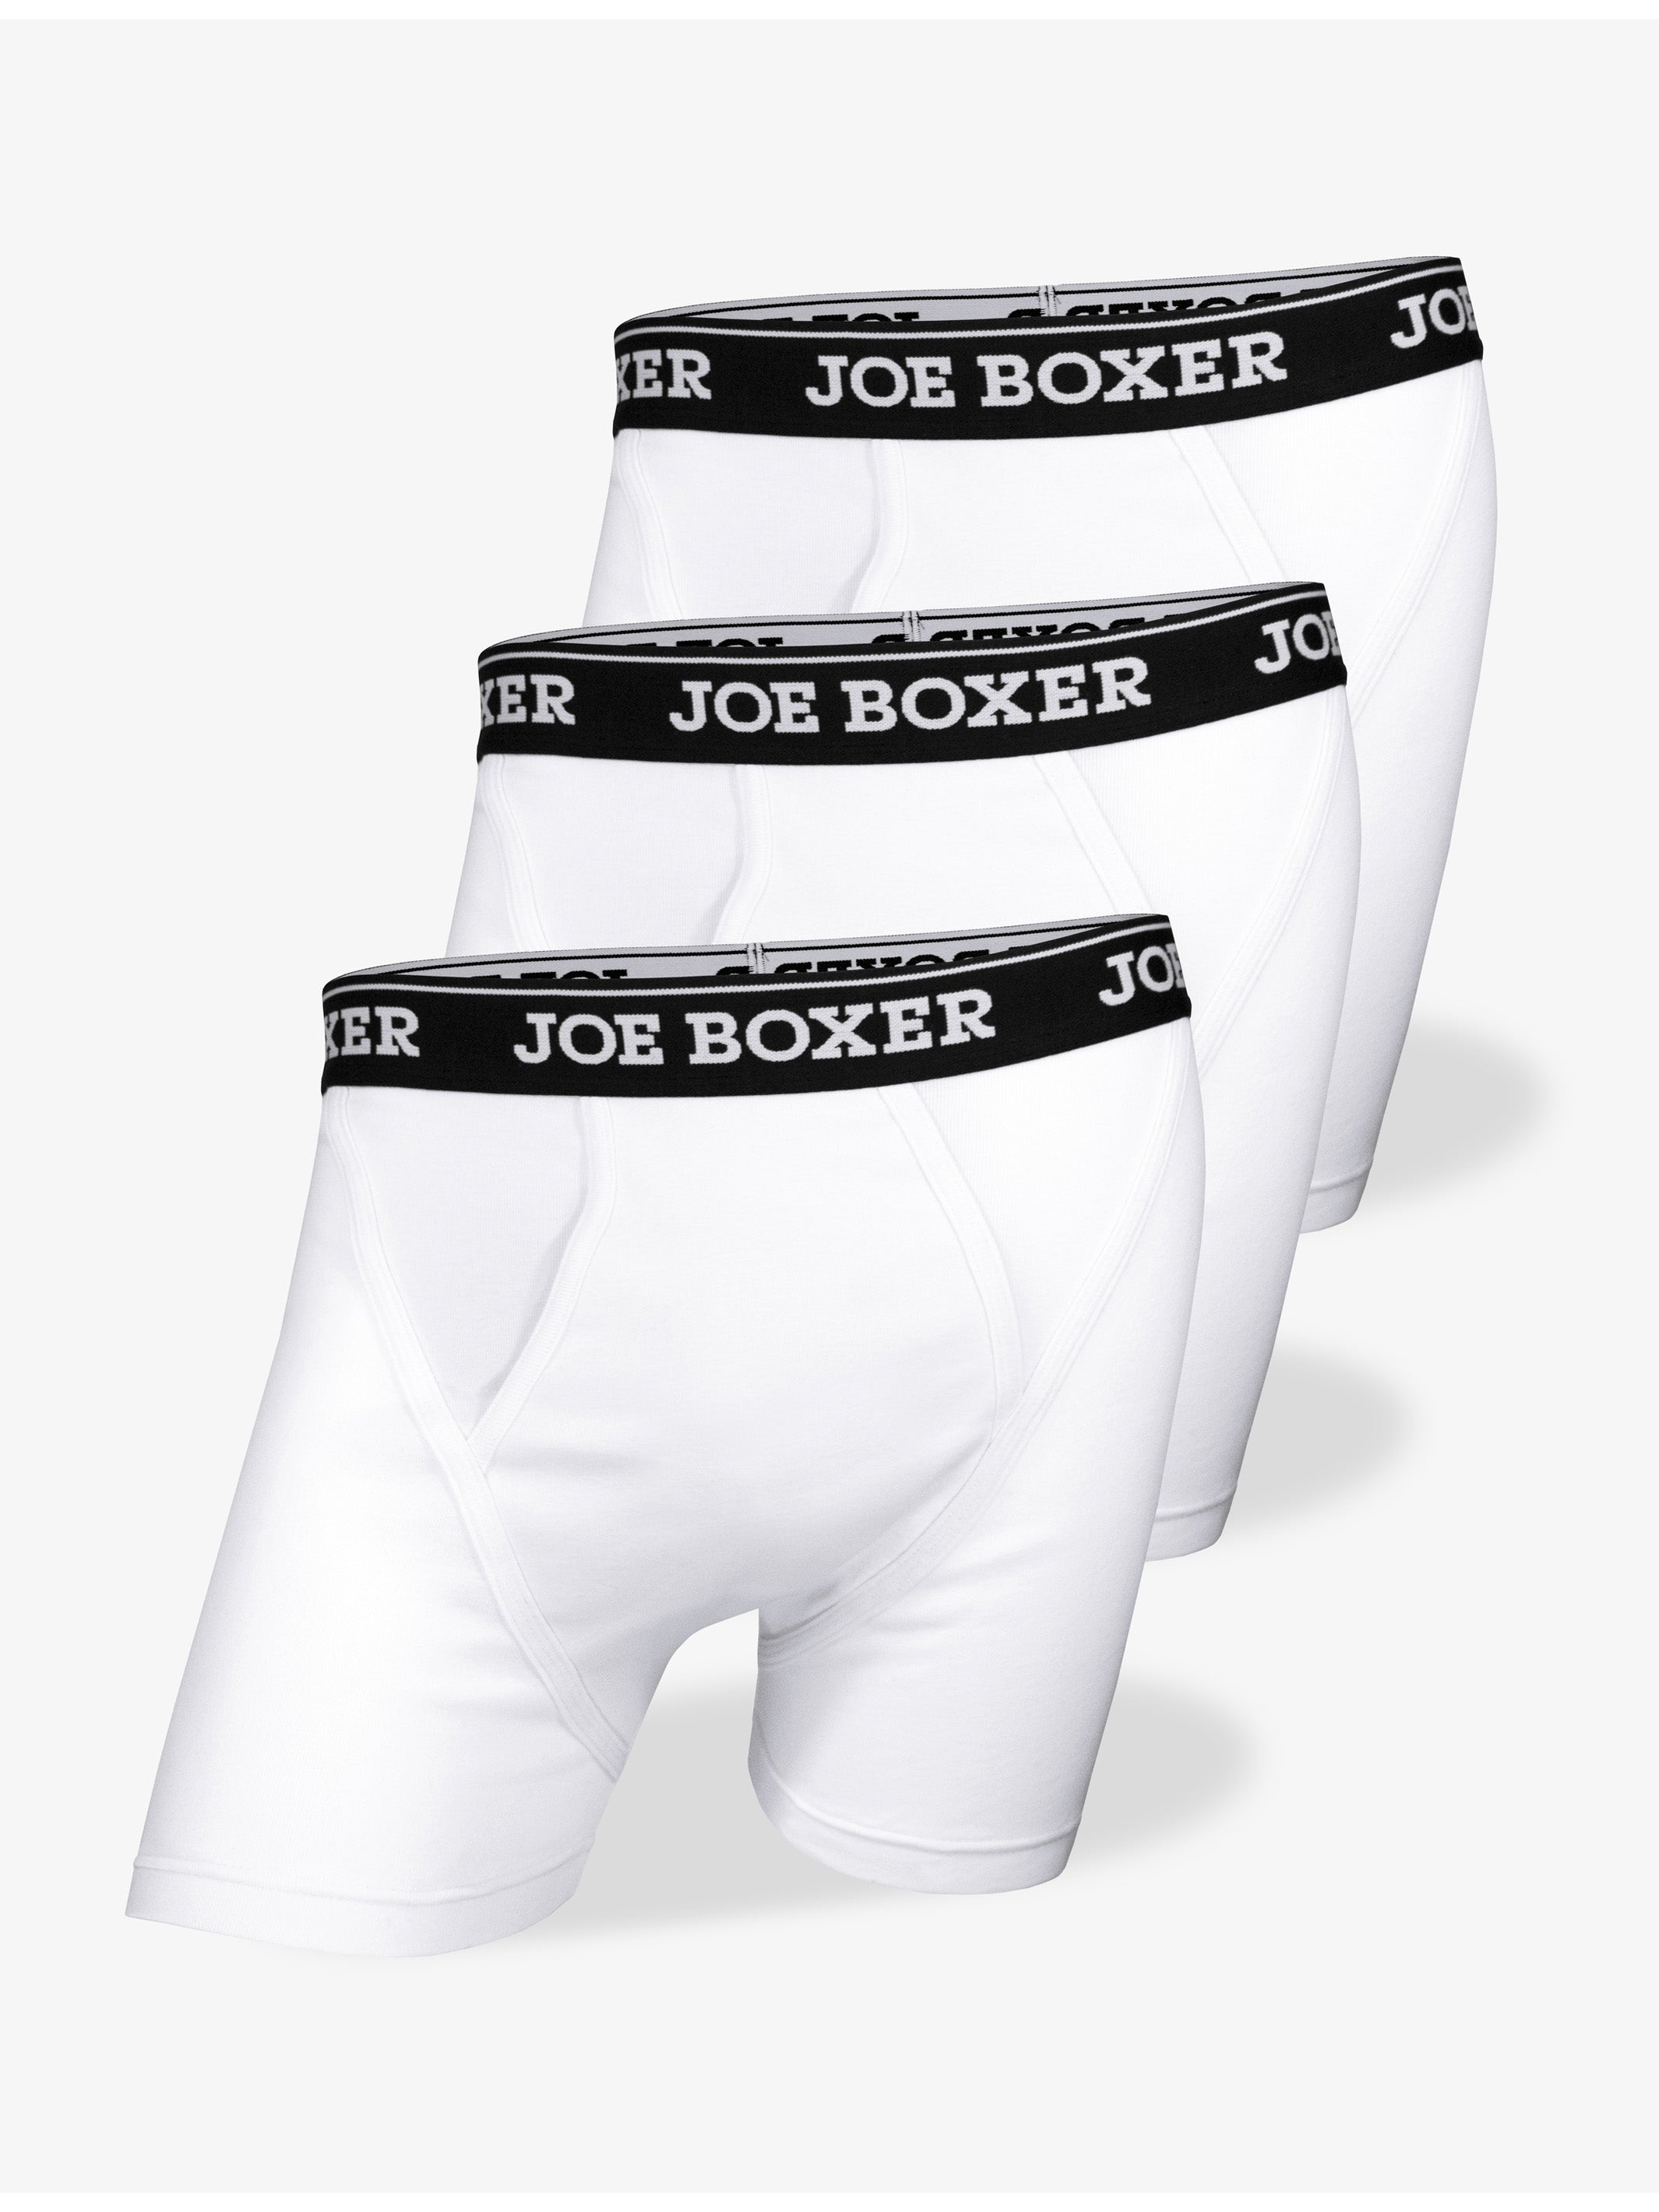 Buy Men's White Boxer Briefs, White Boxer Shorts